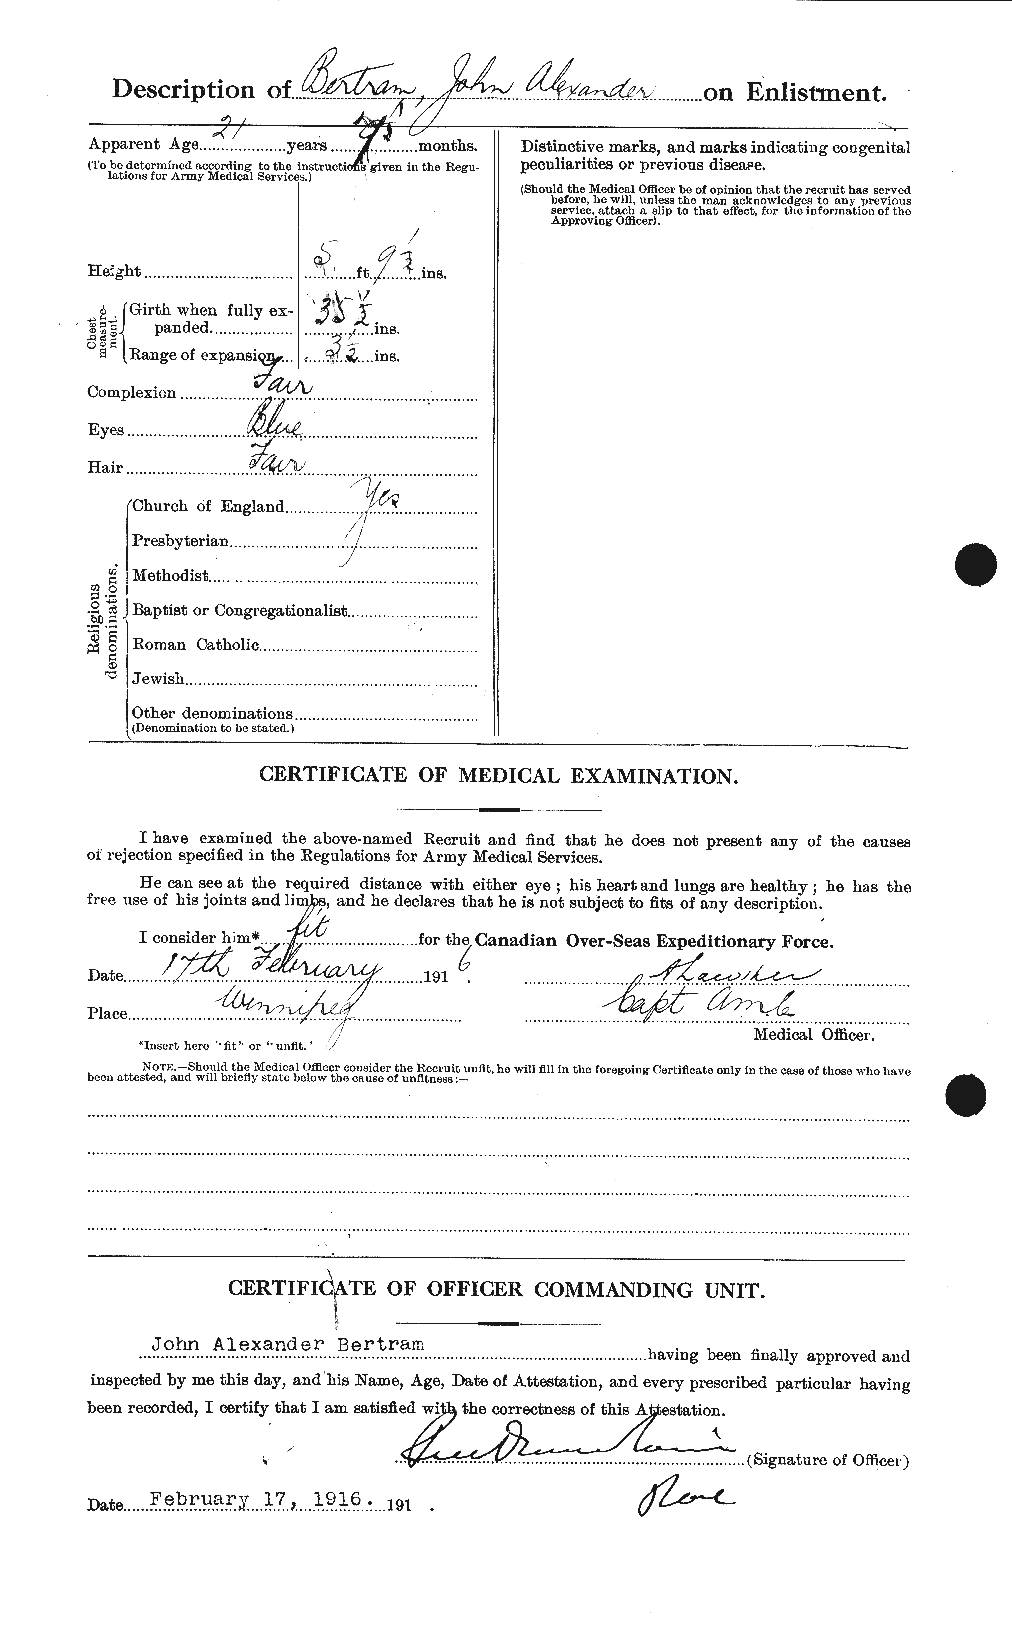 Dossiers du Personnel de la Première Guerre mondiale - CEC 238682b